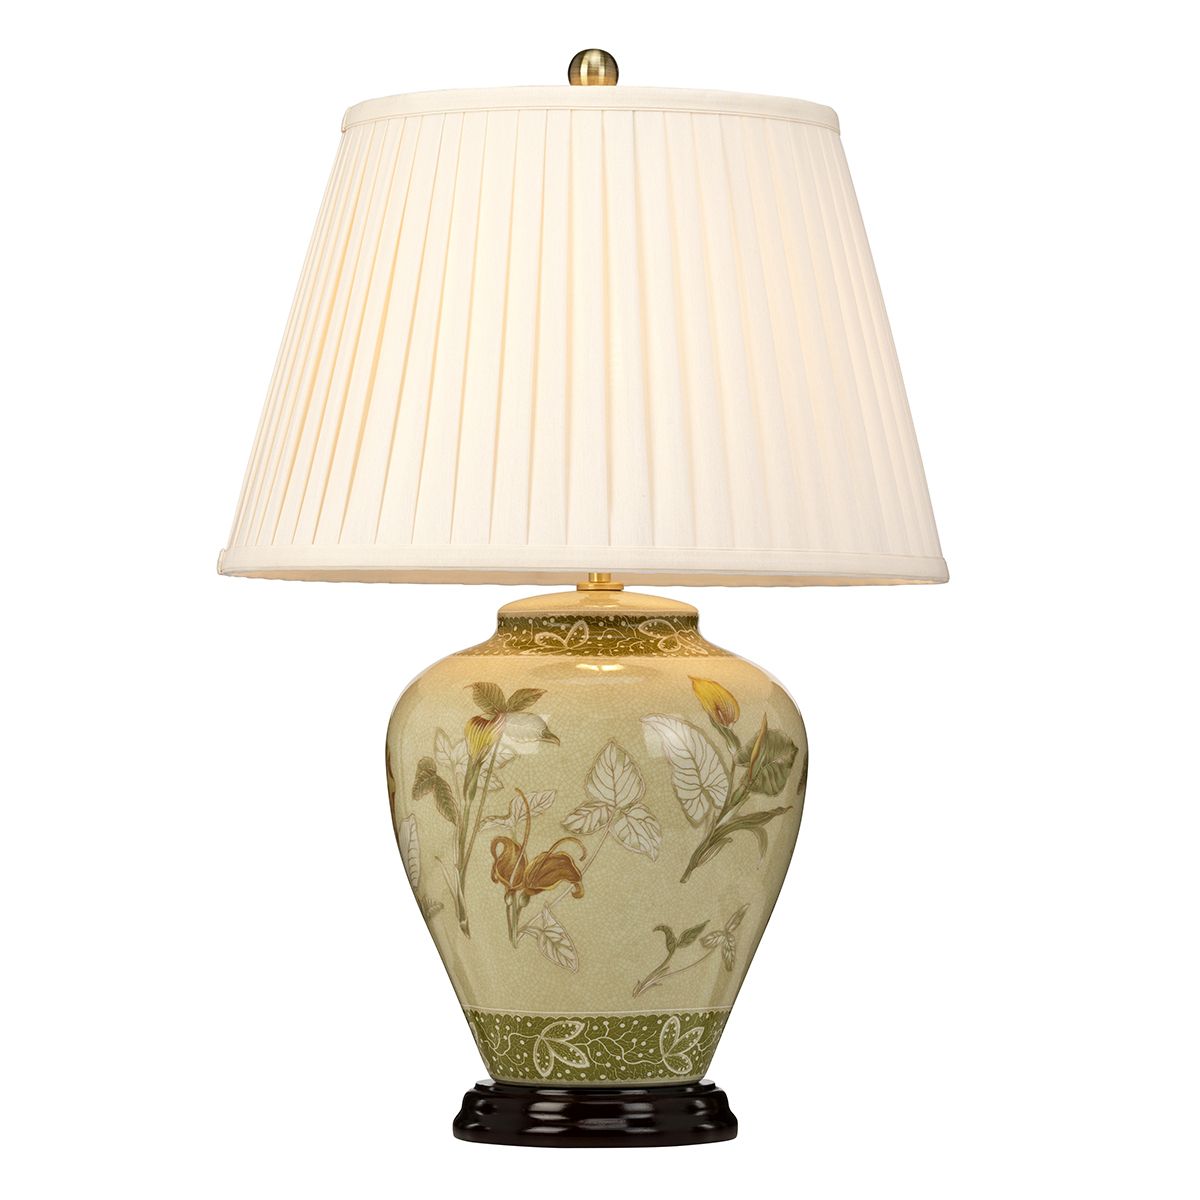 Tischlampe Porzellan rund 62 cm Klassisch elegant